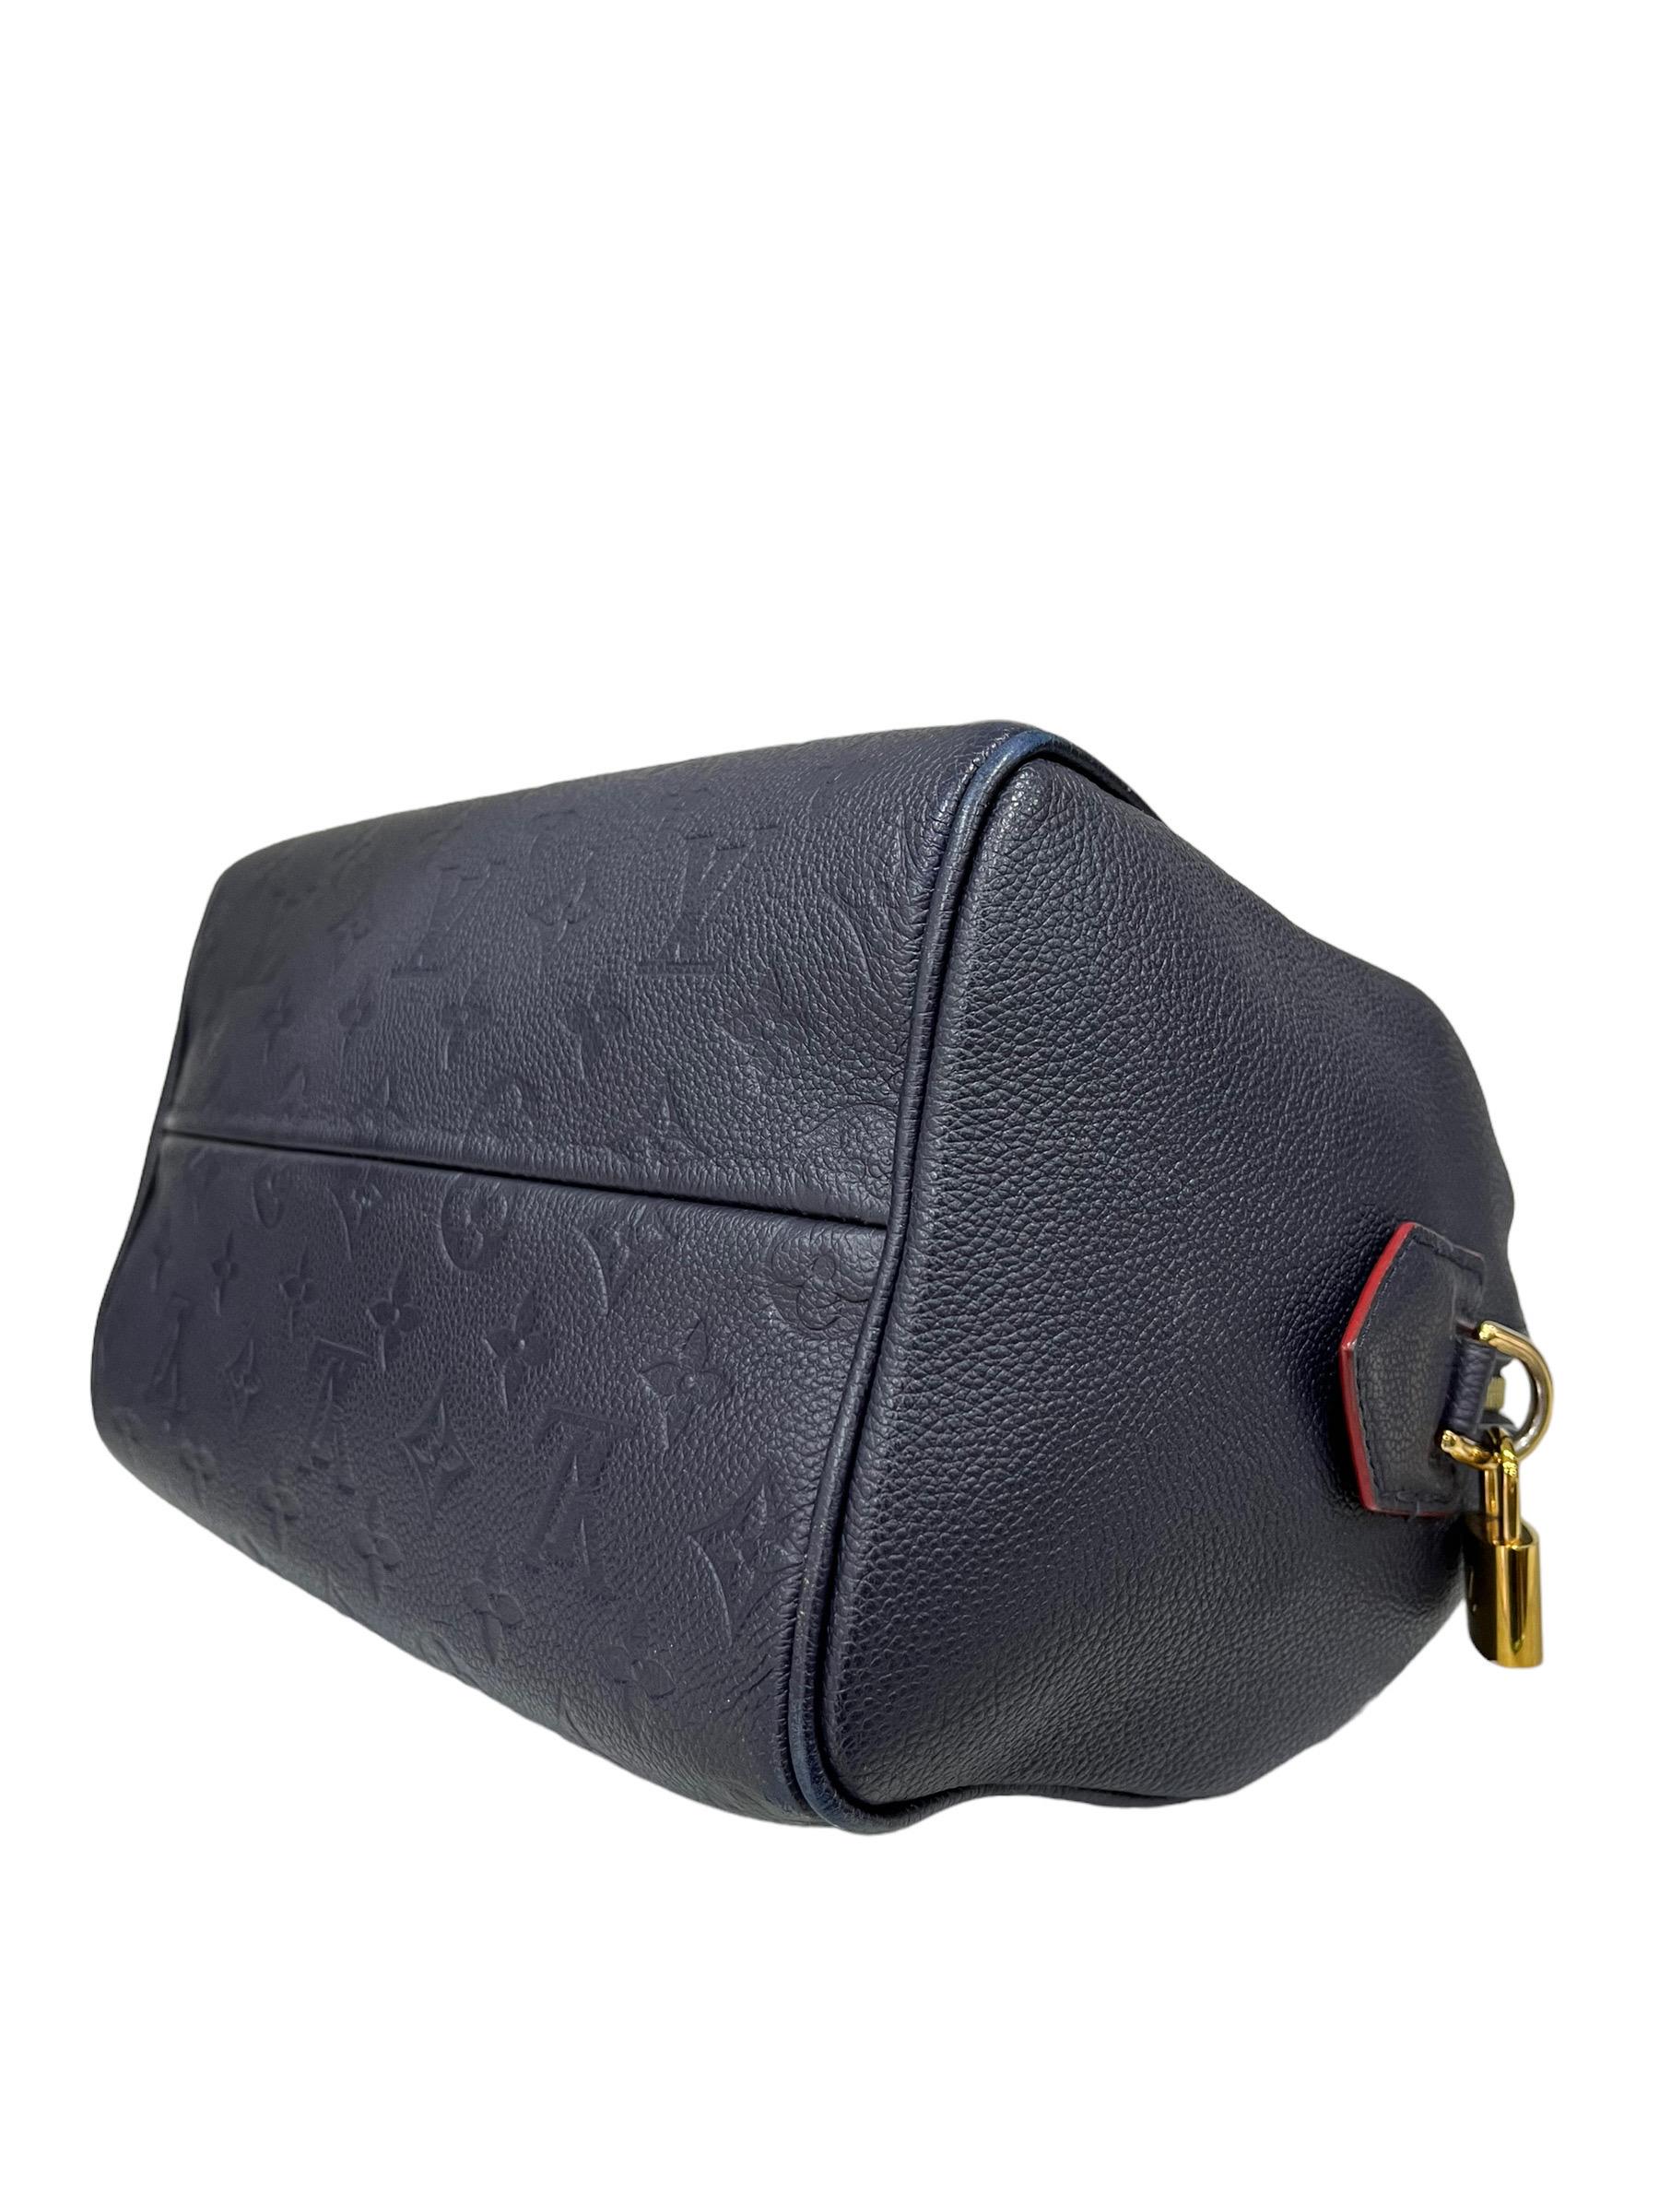 Louis Vuitton Speedy 25 Bandoulière Empreinte Blue Leather Top Handle Bag 1